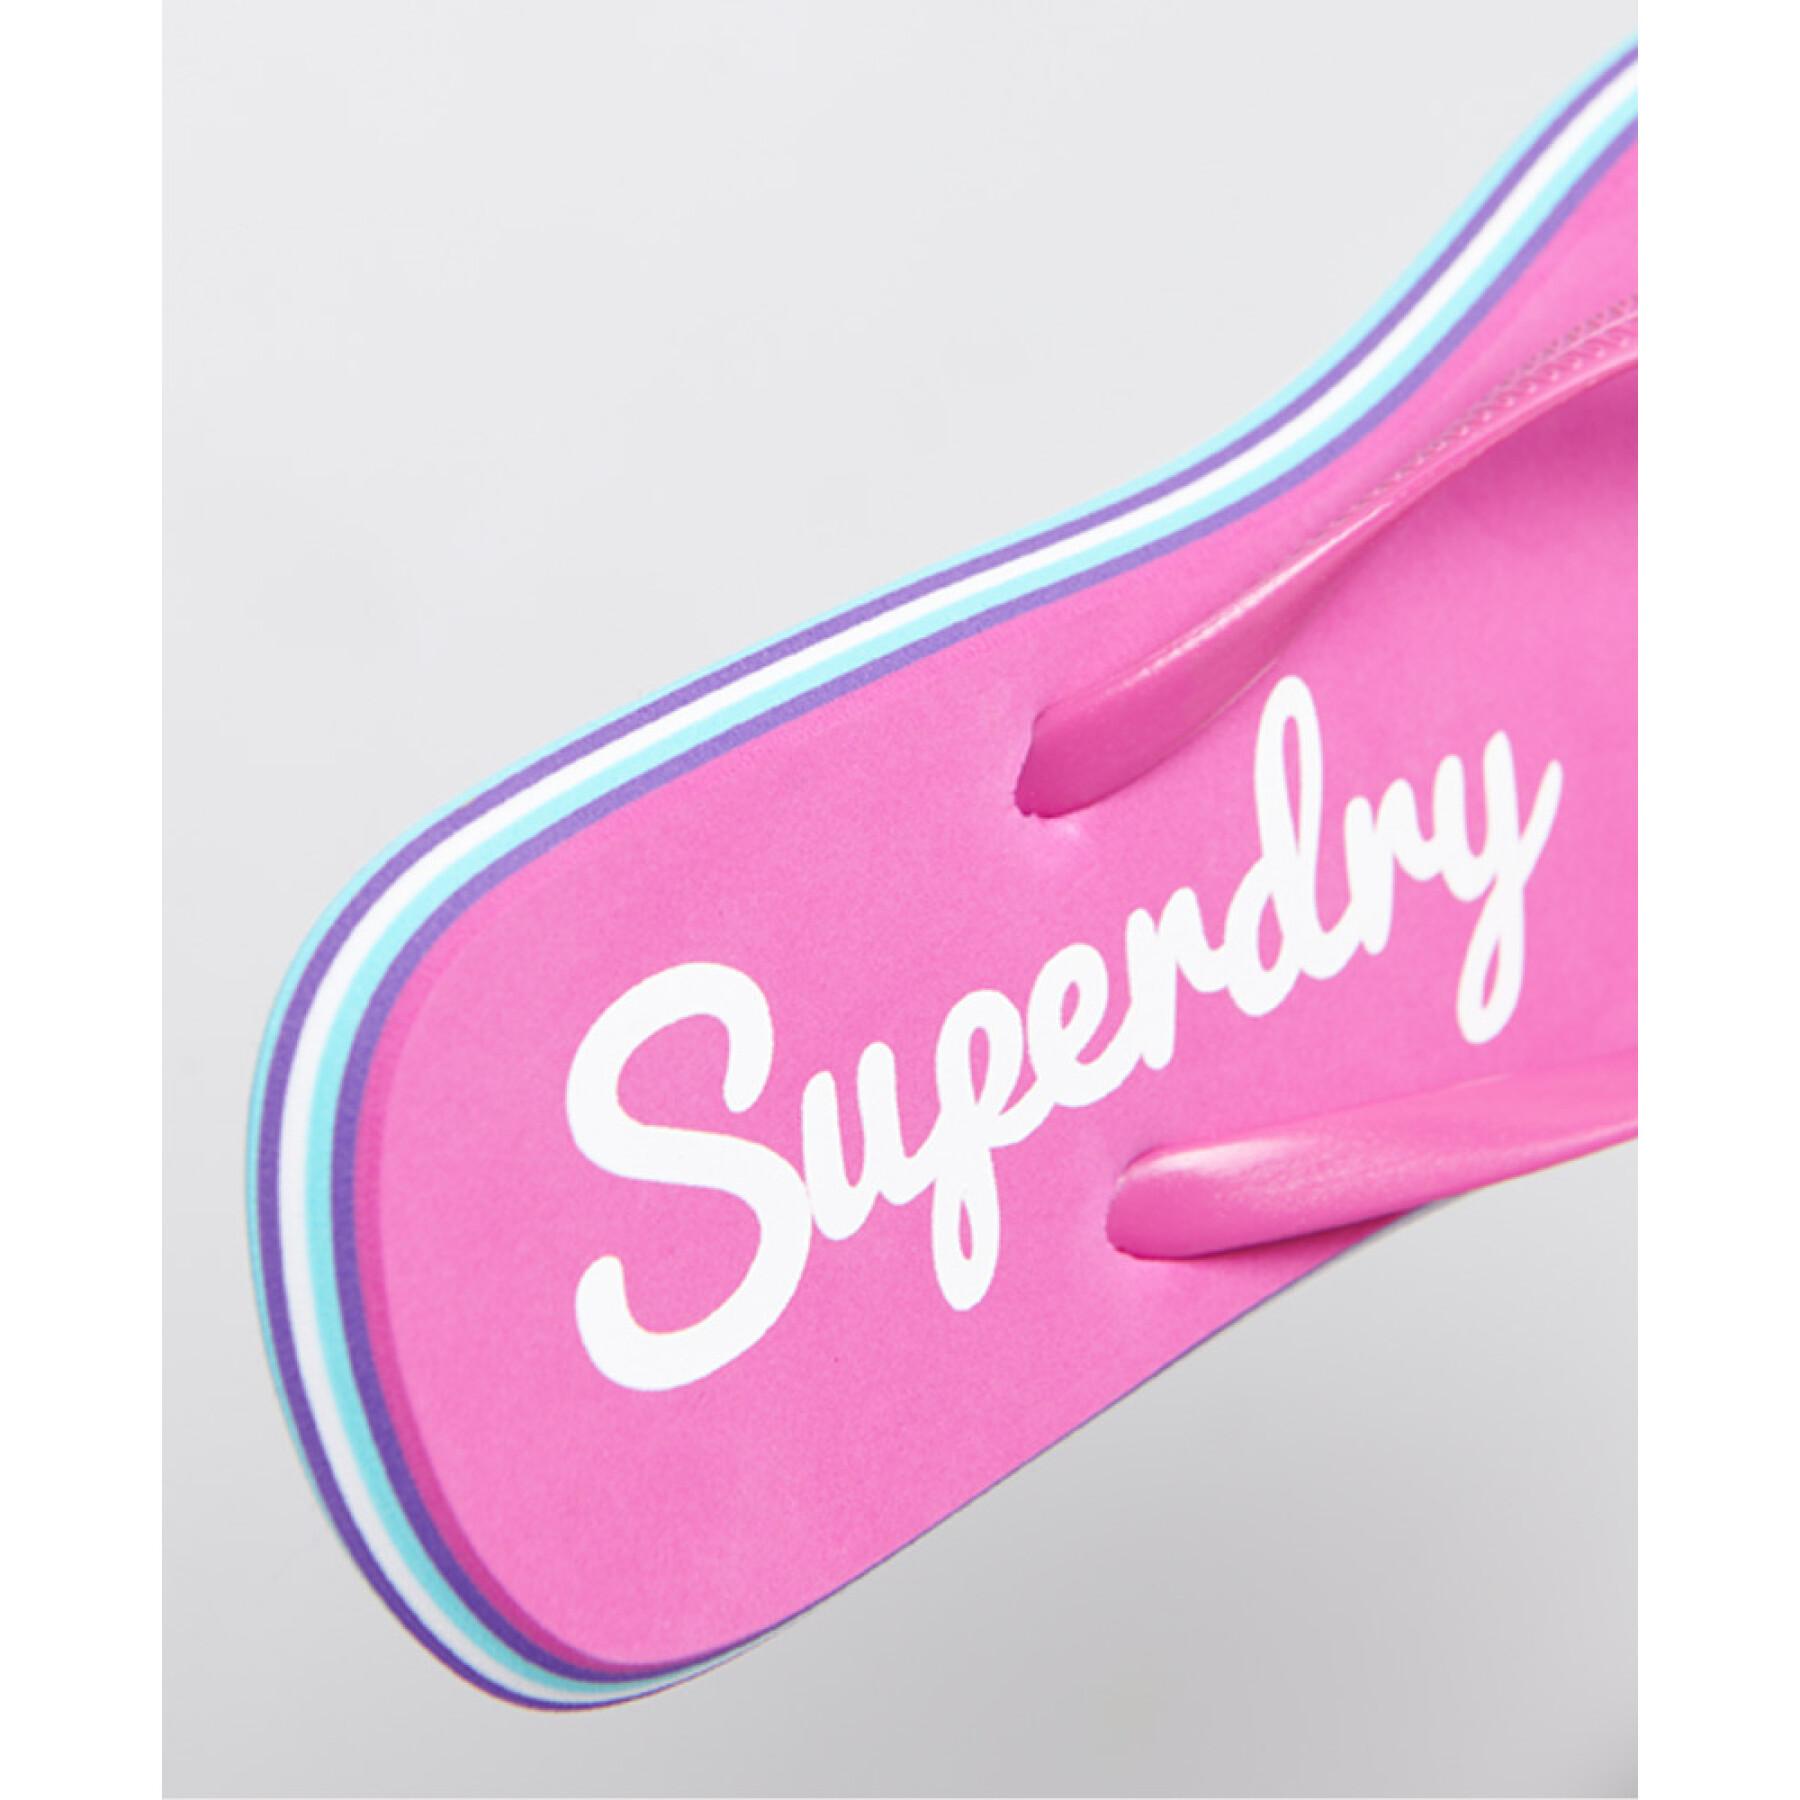 Women's flip-flops Superdry Rainbow